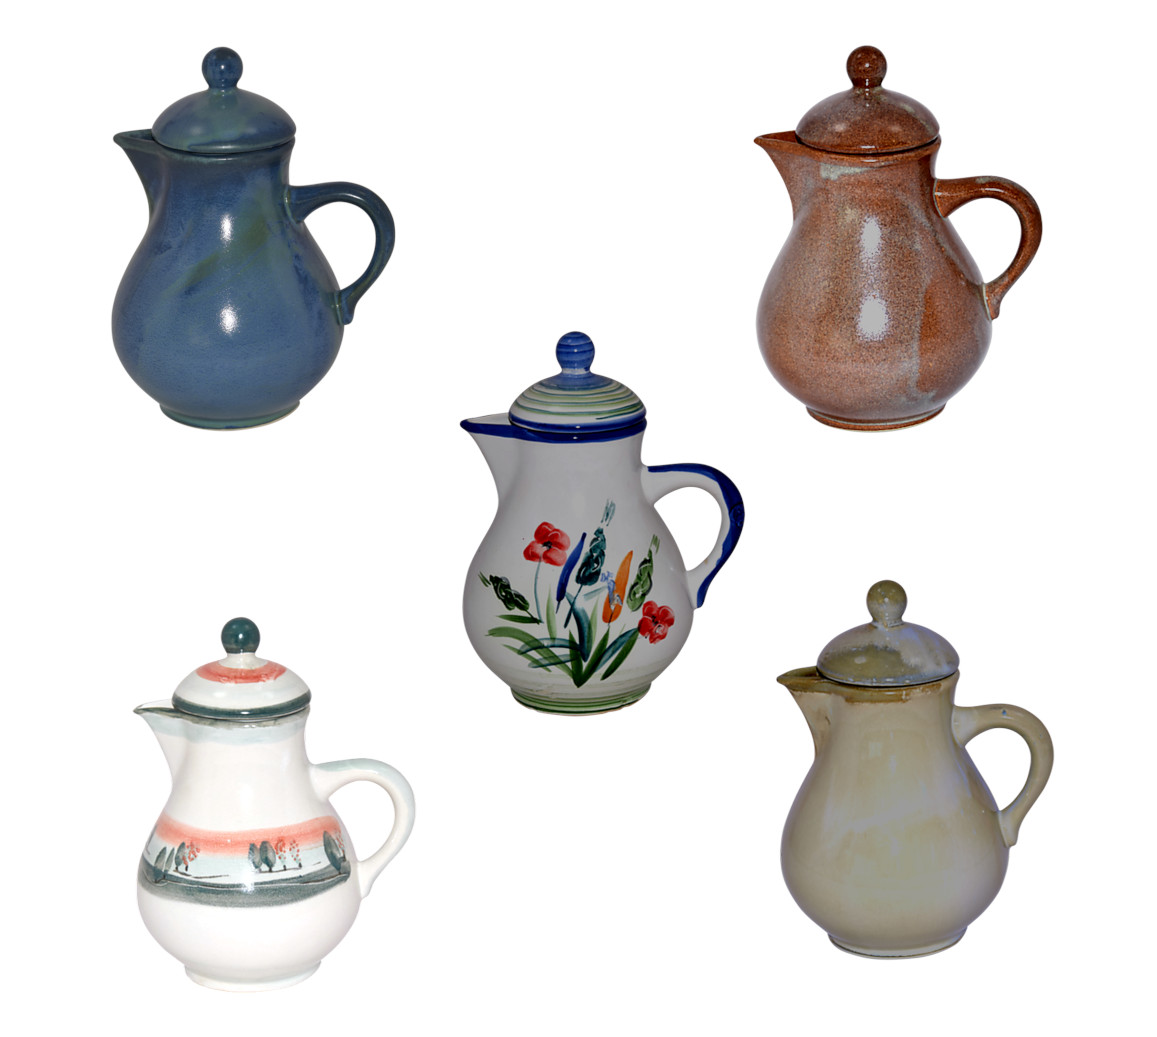 Kaffeekannen aus Keramik in verschiedenen Farben und Motiven | Handarbeit